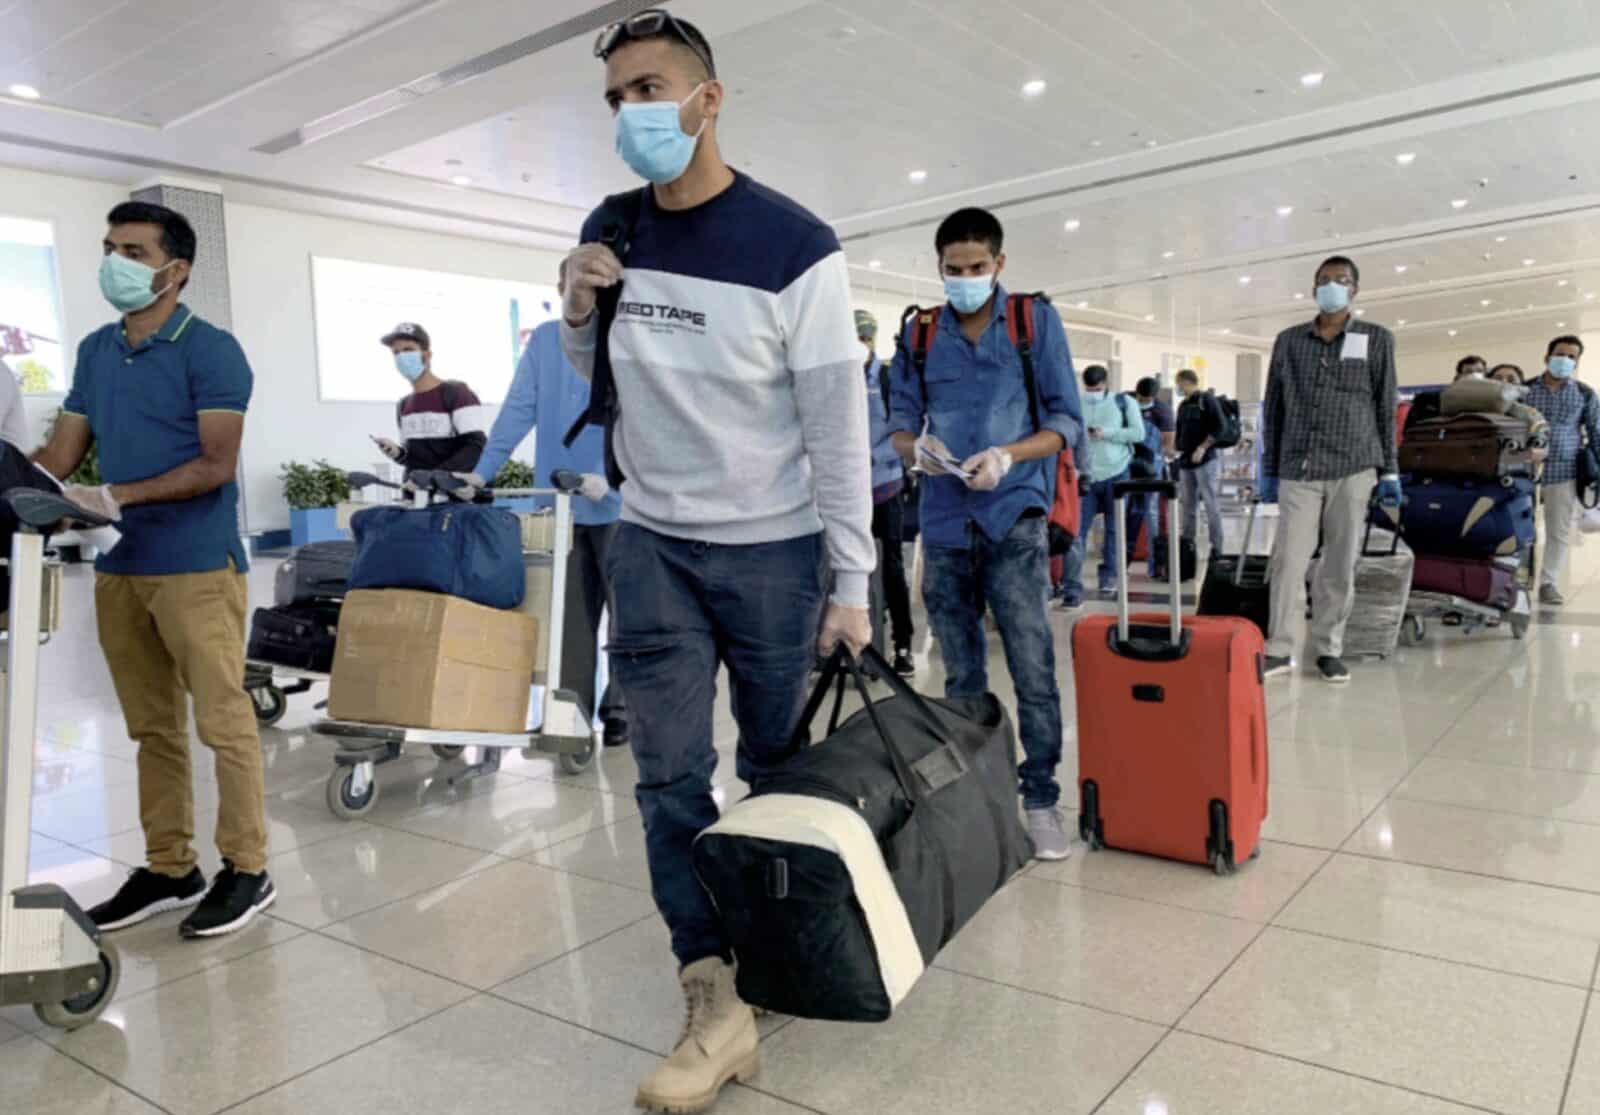 السفر إلى الإمارات العربية المتحدة: الهنود الذين تقطعت بهم السبل يتنفسون الصعداء مع استئناف الرحلات الجوية - أخبار